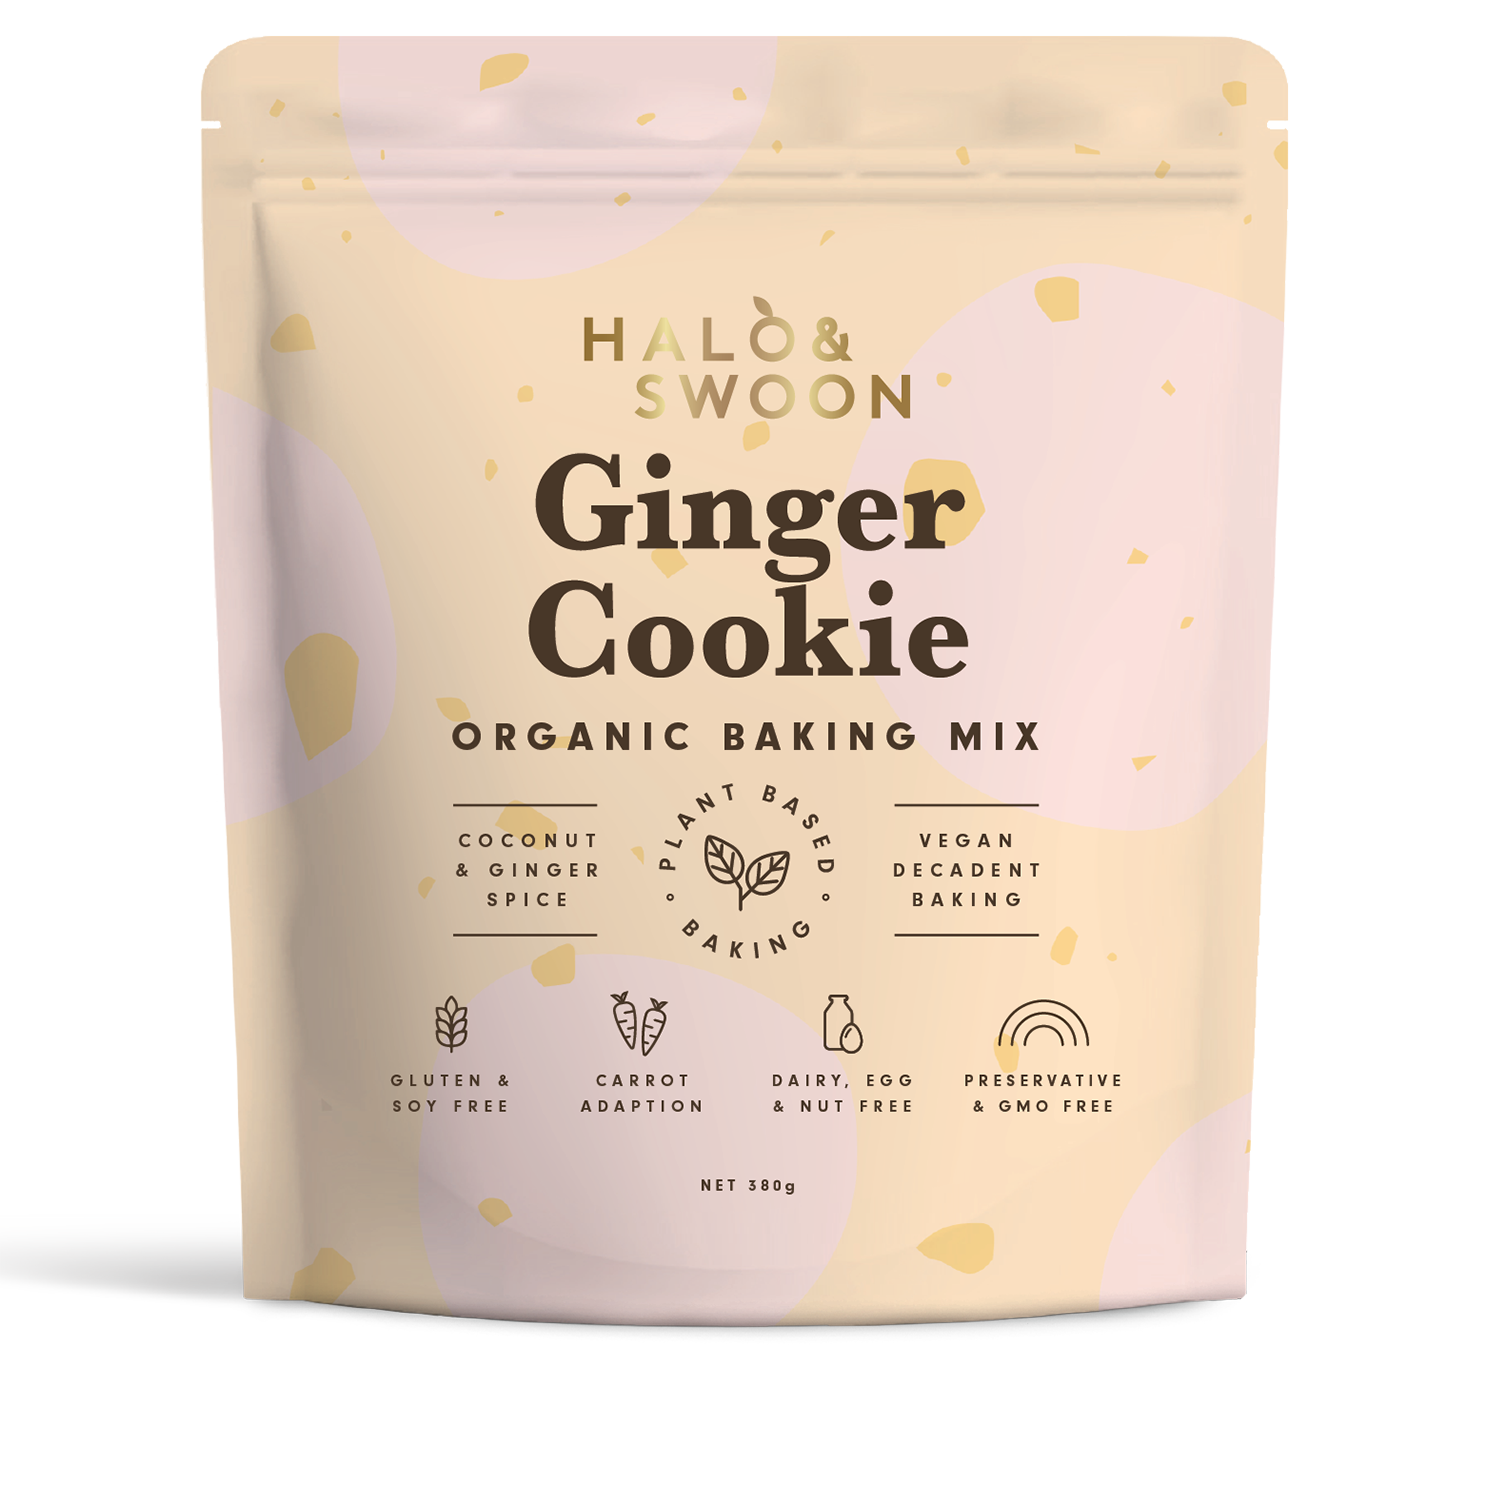 Halo & Swoon Ginger Cookie - organic, vegan, gluten-free baking mix